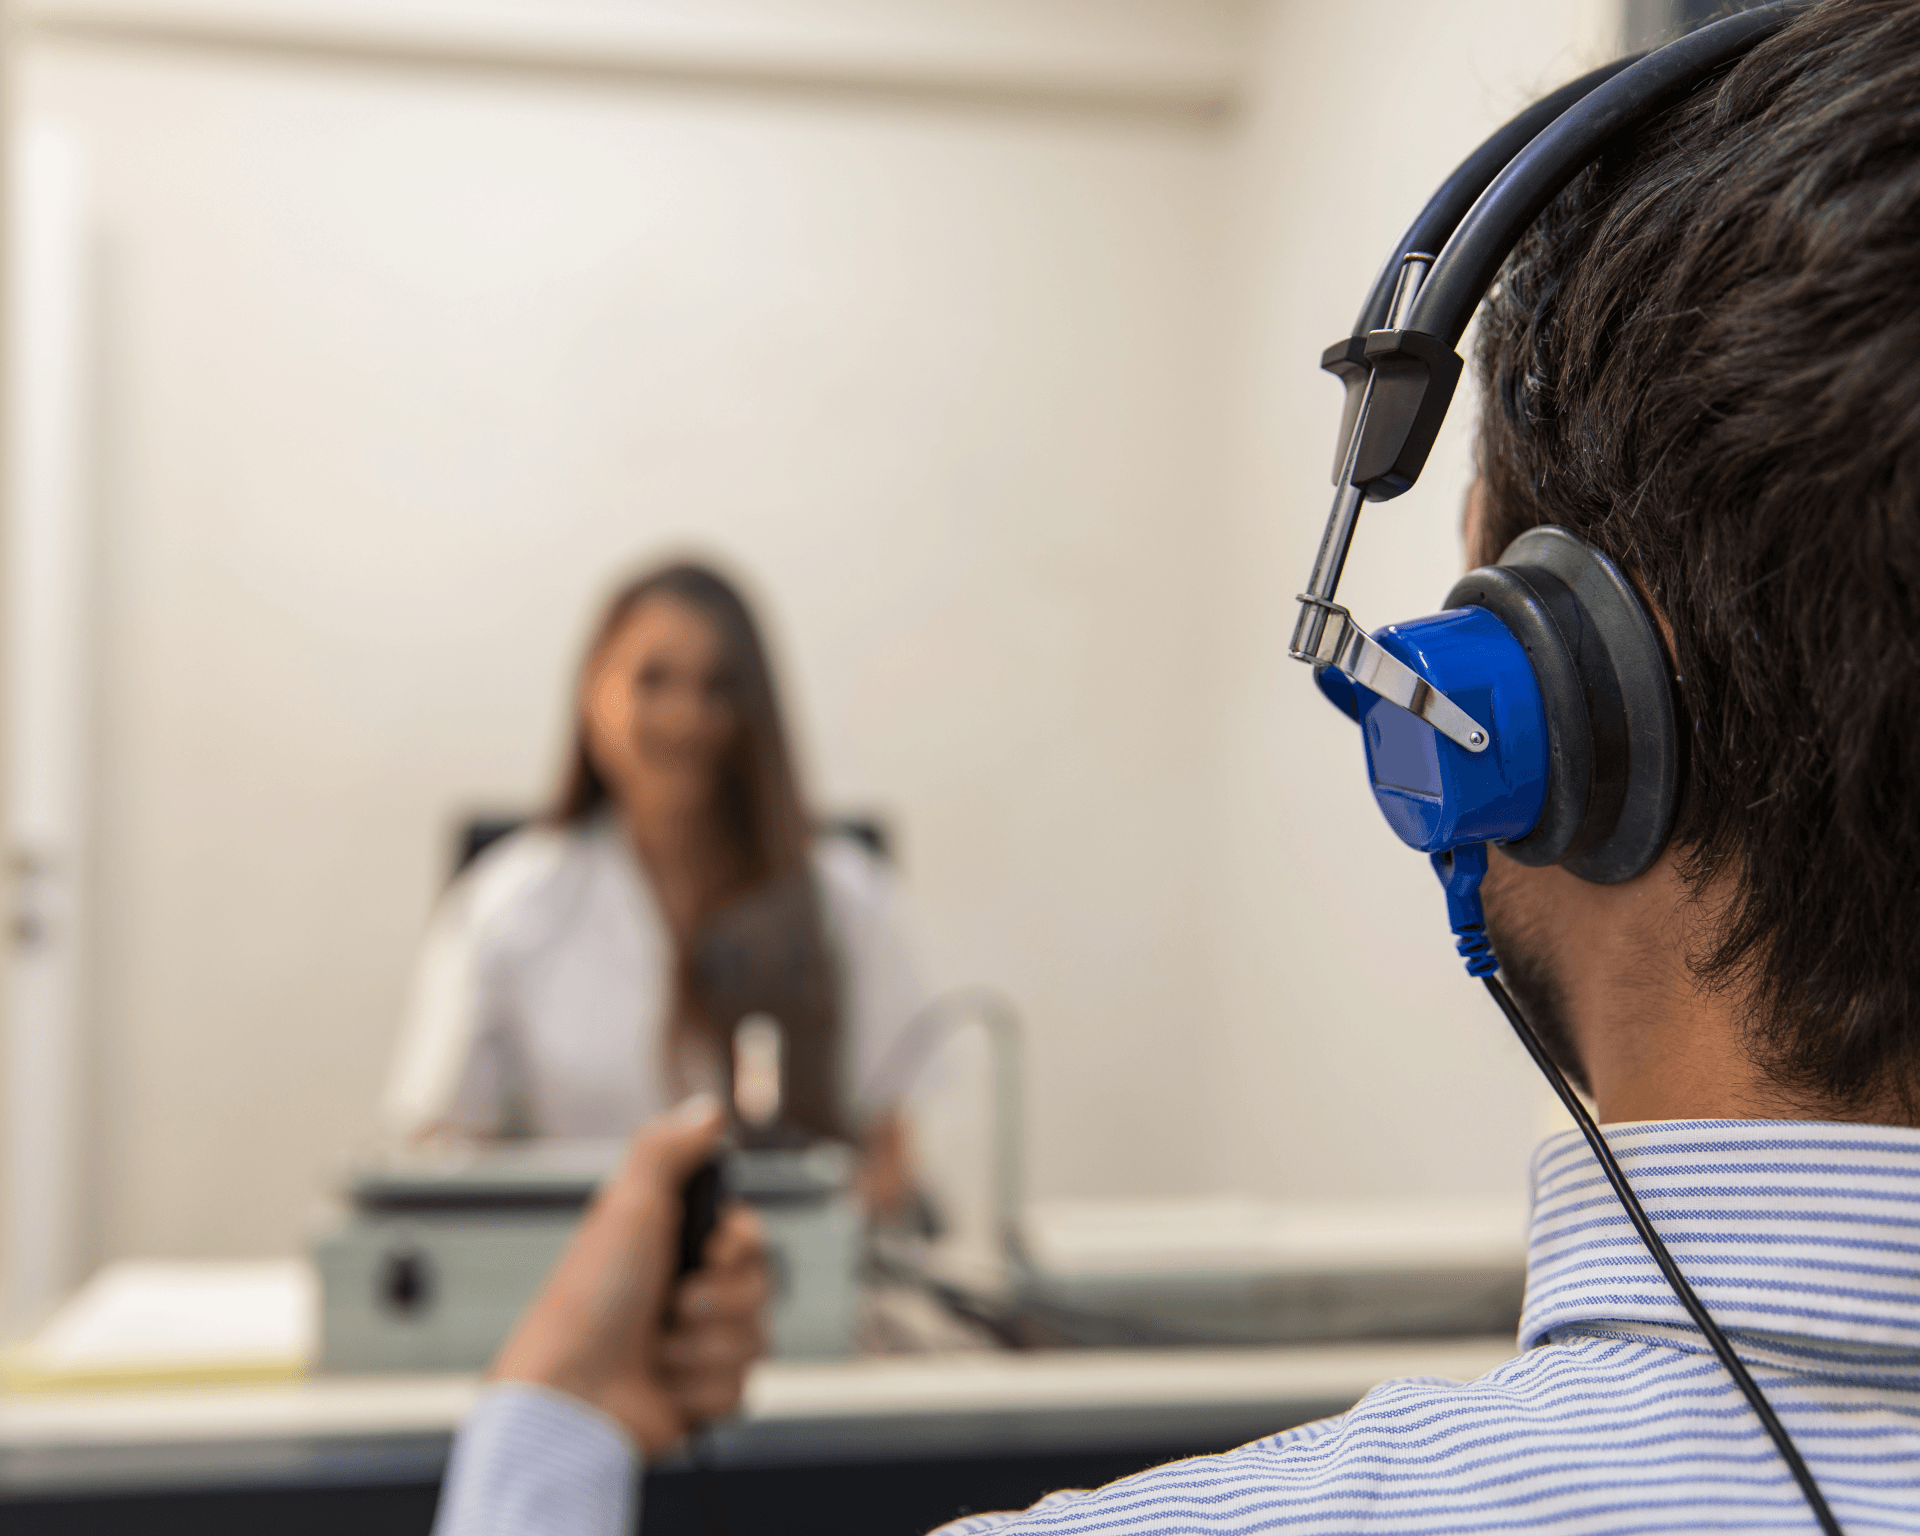 Audiologiste qui effectue un test auditif complet à un patient qui se trouve dans une cabine insonorisée avec un casque d'écoute